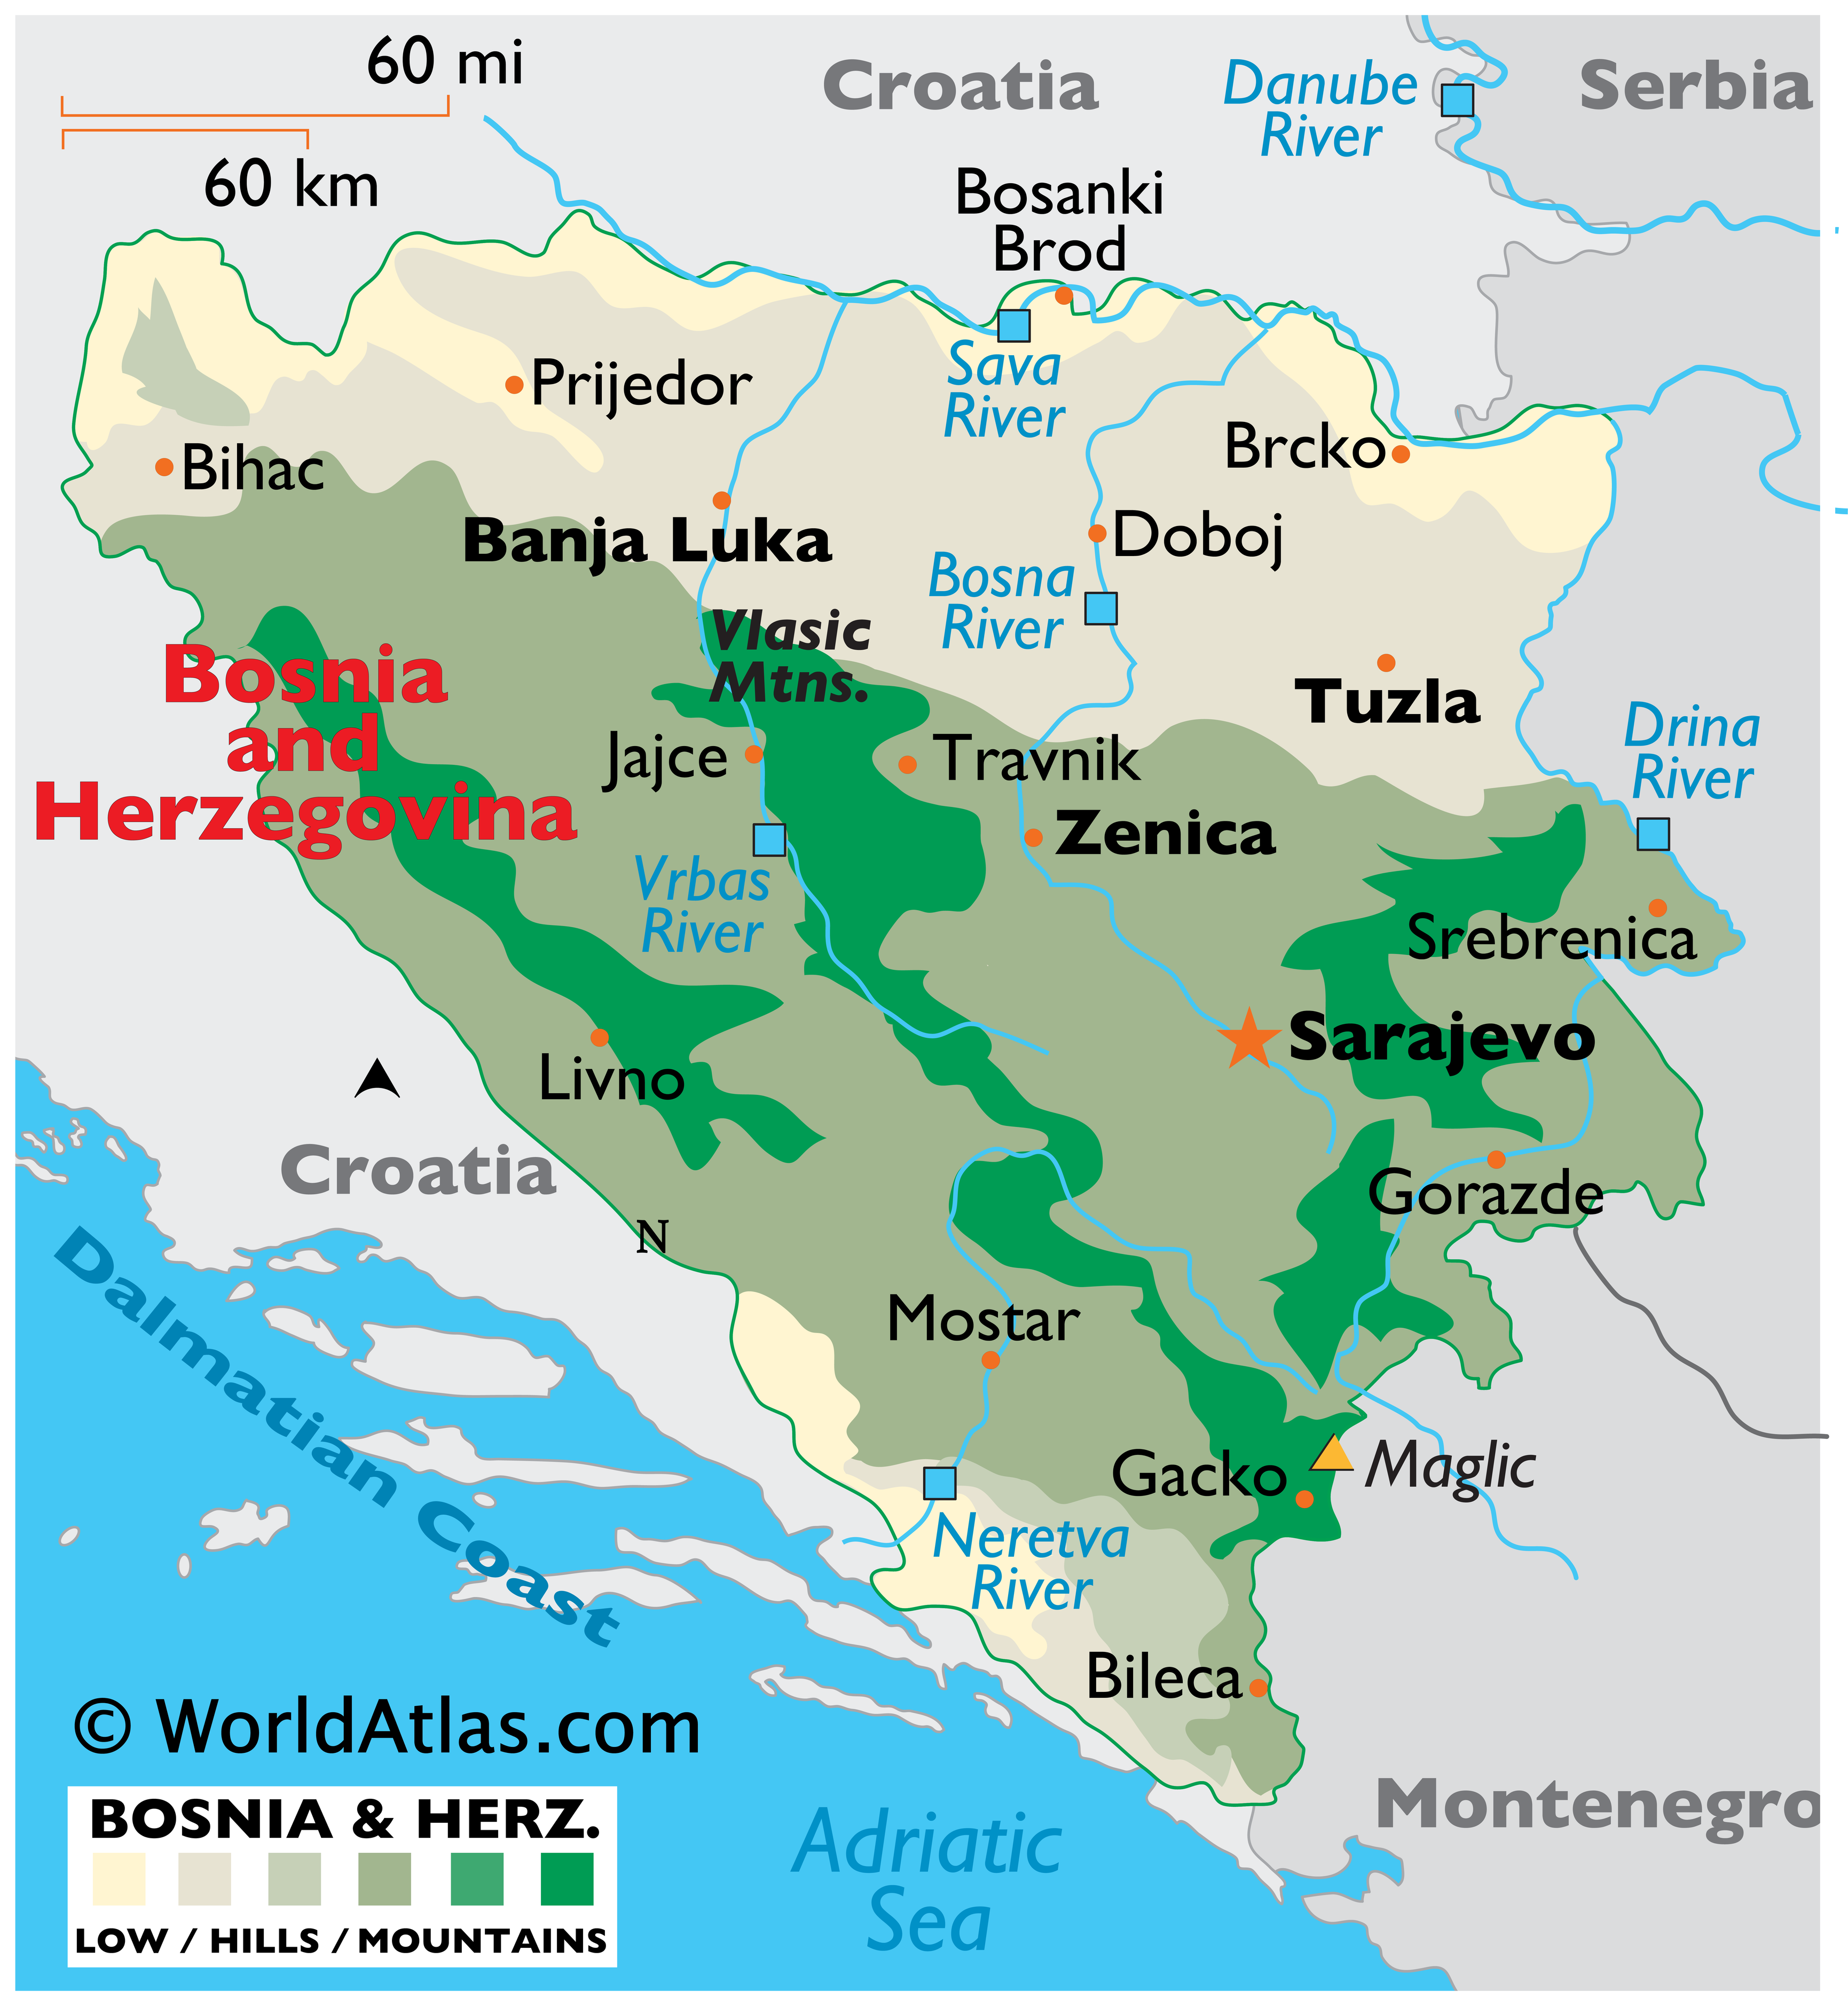 bosnian people religion